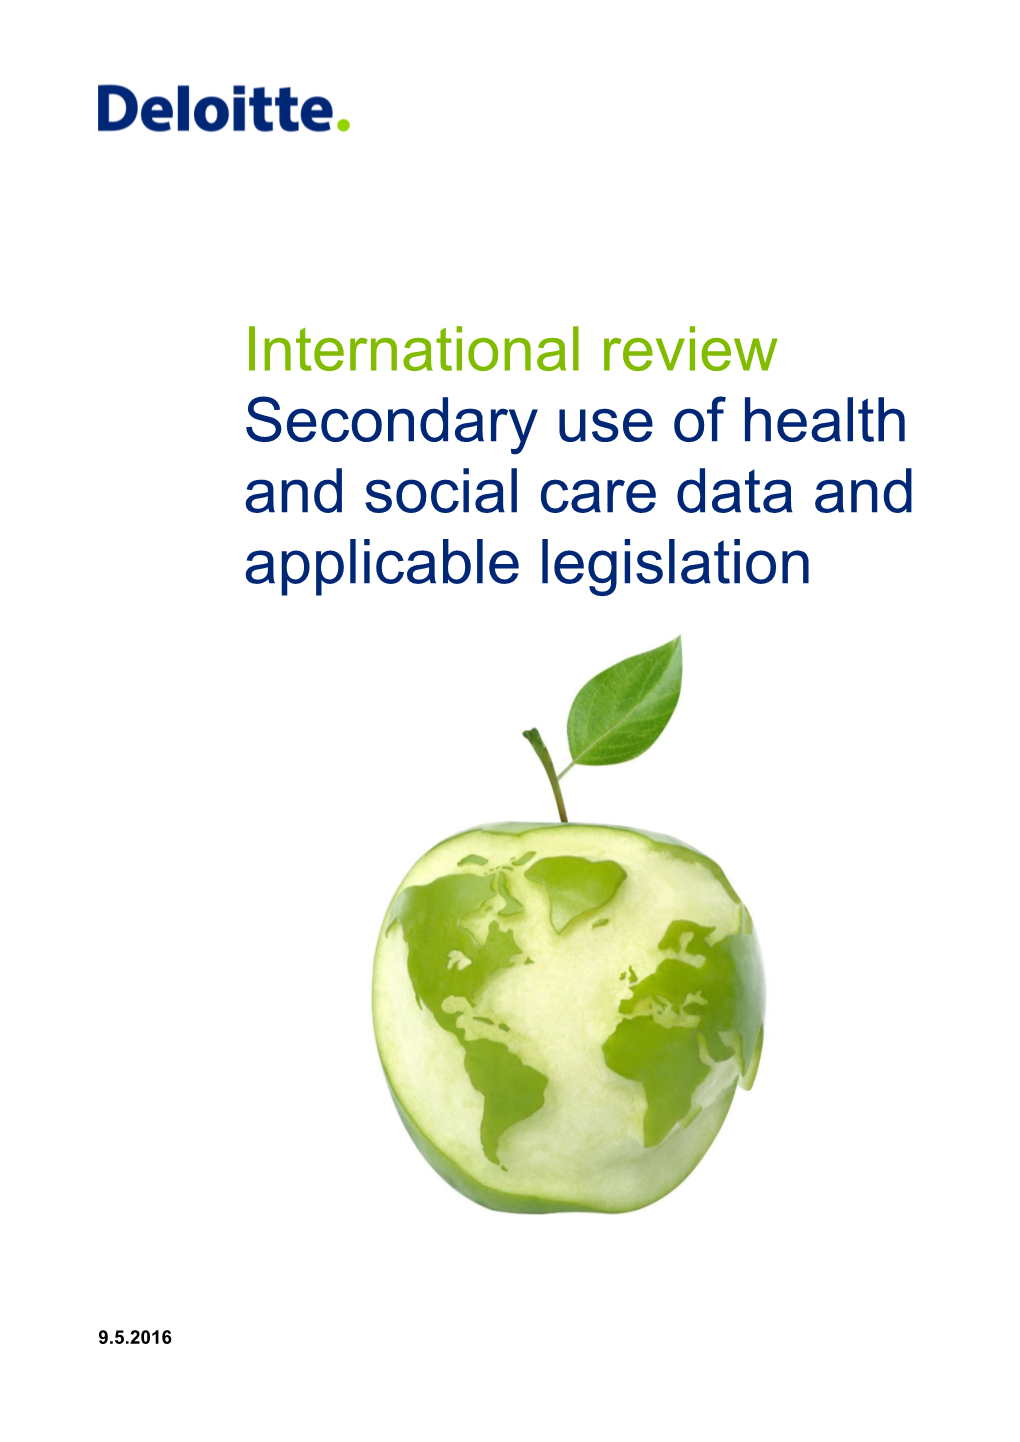 Secondary Use of Health Data Agenda Forward